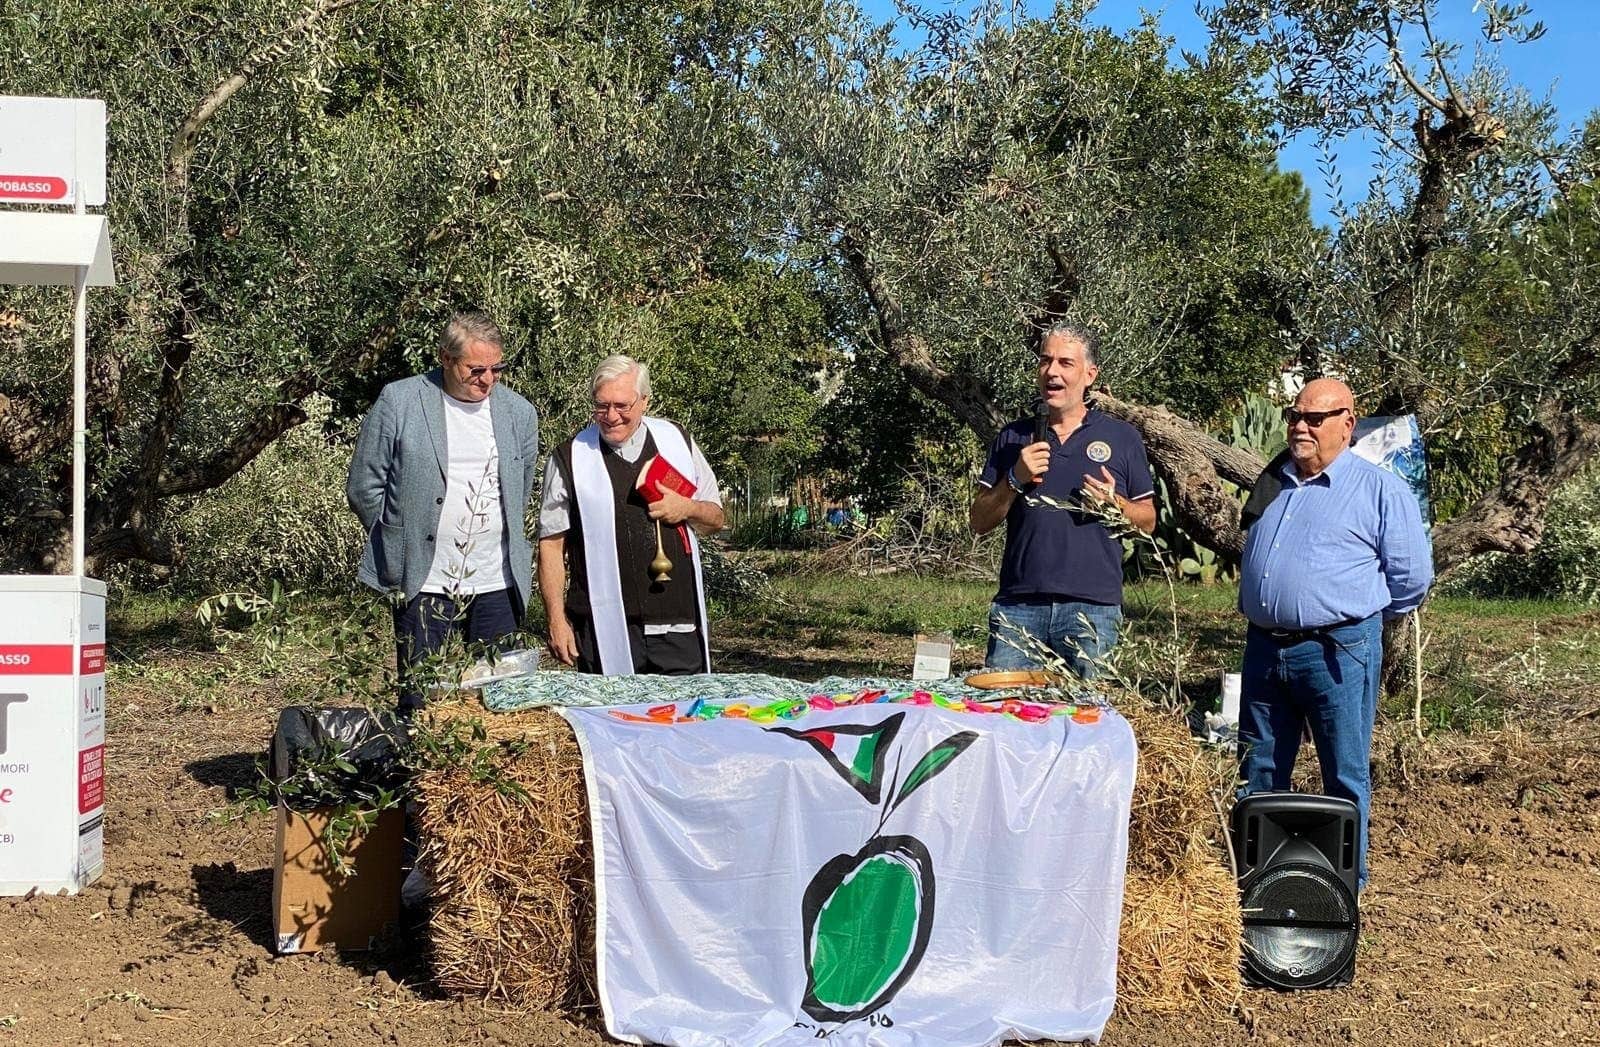 brèves-variétés-nouveau-parc-en-molise-favorise-la-biodiversité-de-l-olivier-l-inclusion-sociale-les-temps-de-l-huile-d-olive